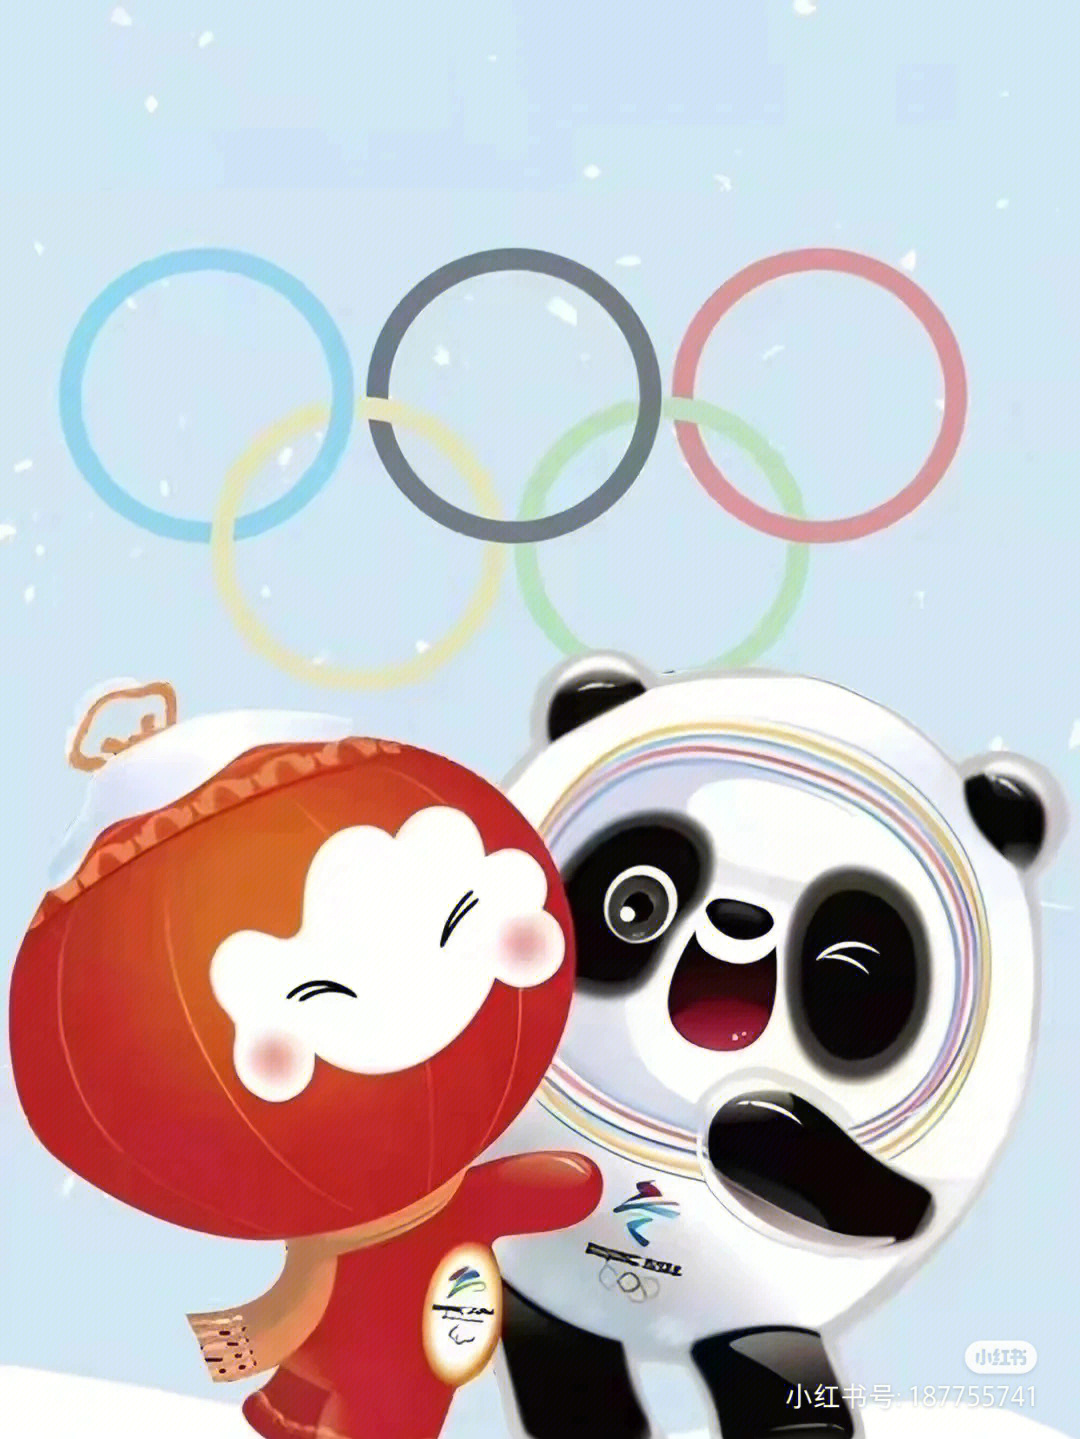 2006年冬奥吉祥物图片